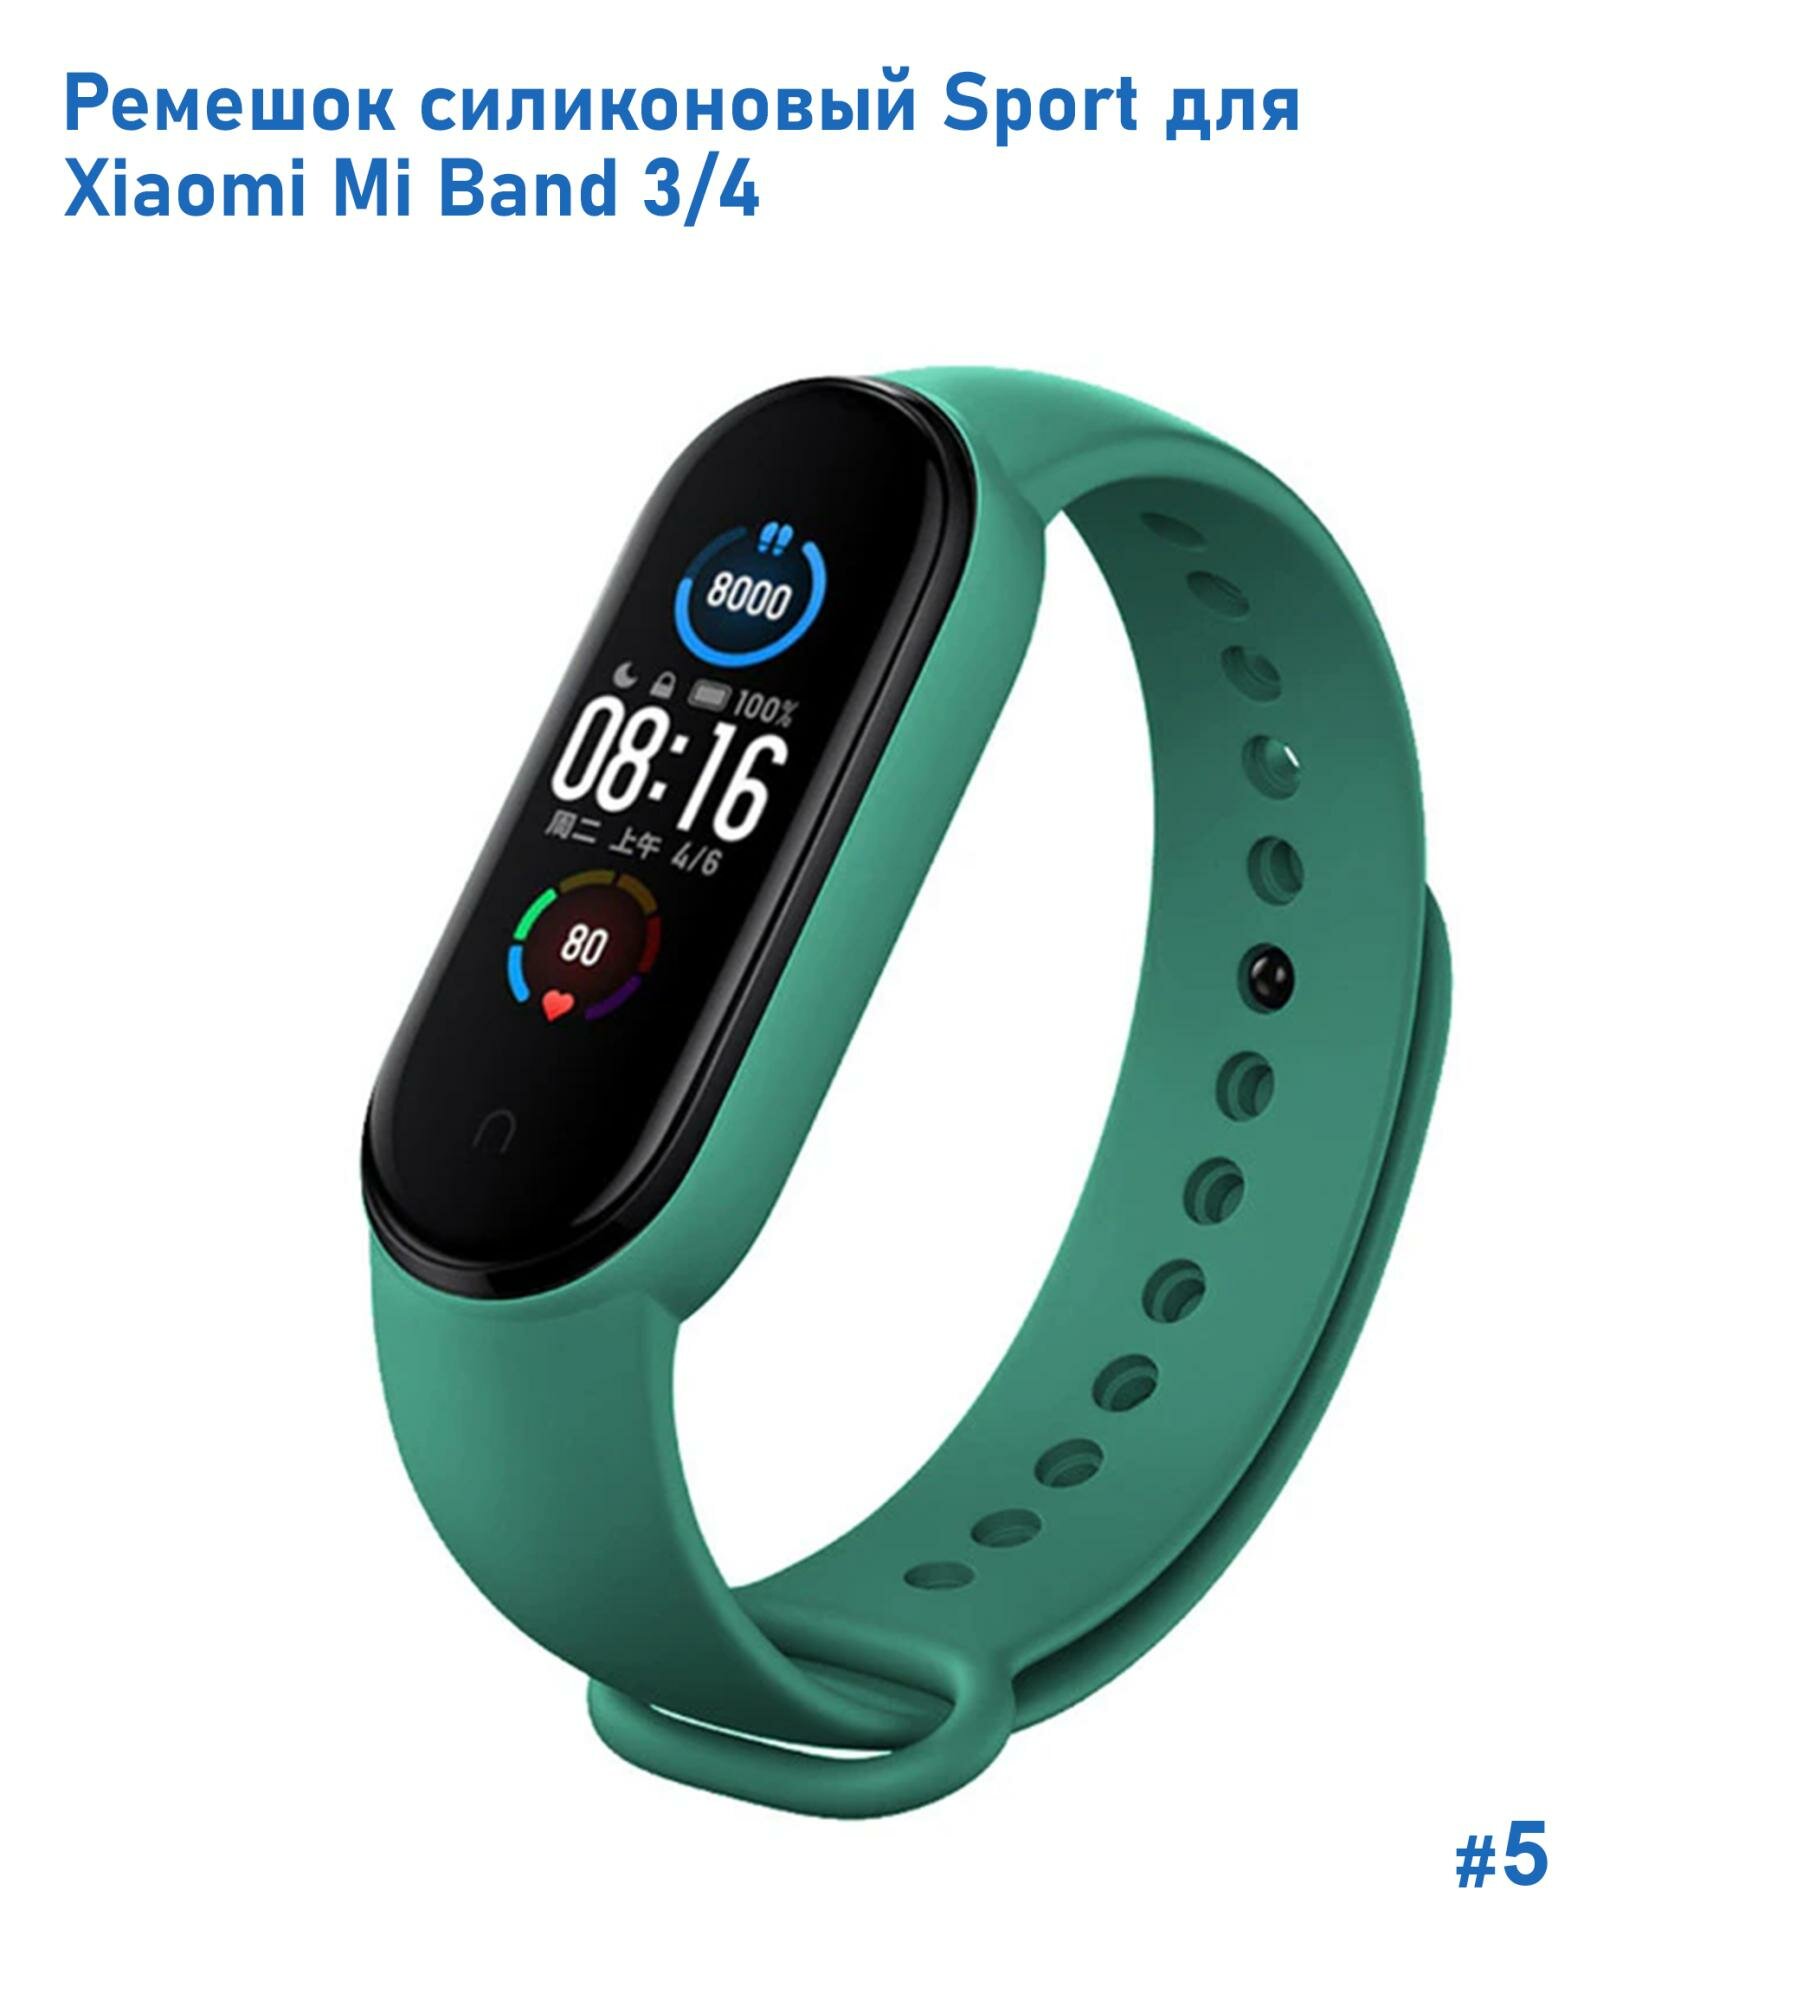 Ремешок силиконовый Sport для Xiaomi Mi Band 3/4, на кнопке, зеленый (5)